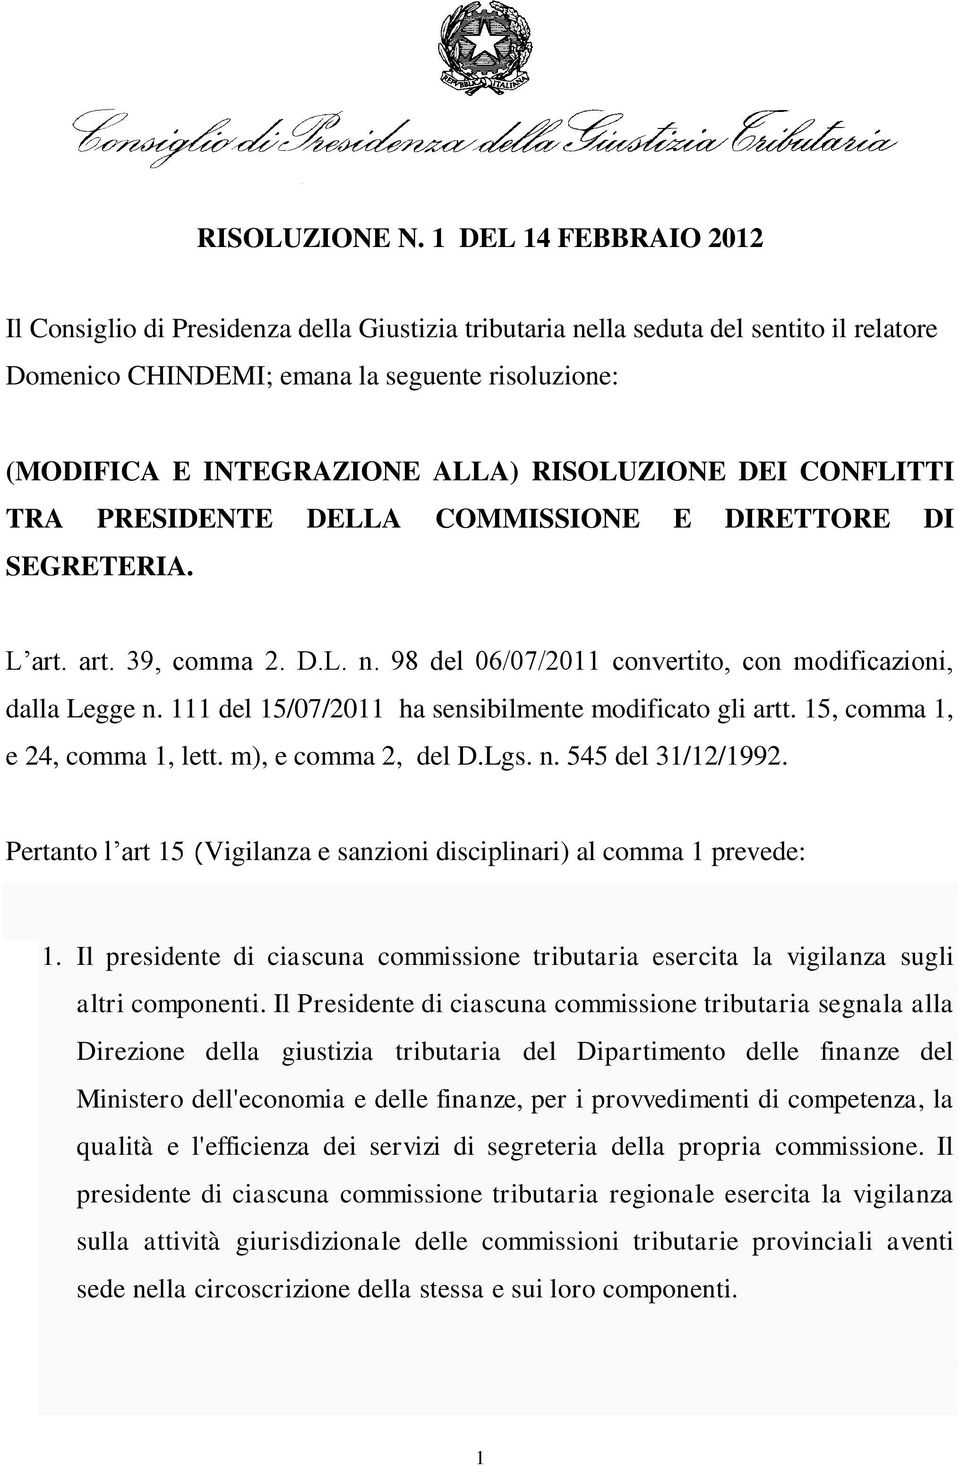 RISOLUZIONE DEI CONFLITTI TRA PRESIDENTE DELLA COMMISSIONE E DIRETTORE DI SEGRETERIA. L art. art. 39, comma 2. D.L. n. 98 del 06/07/2011 convertito, con modificazioni, dalla Legge n.